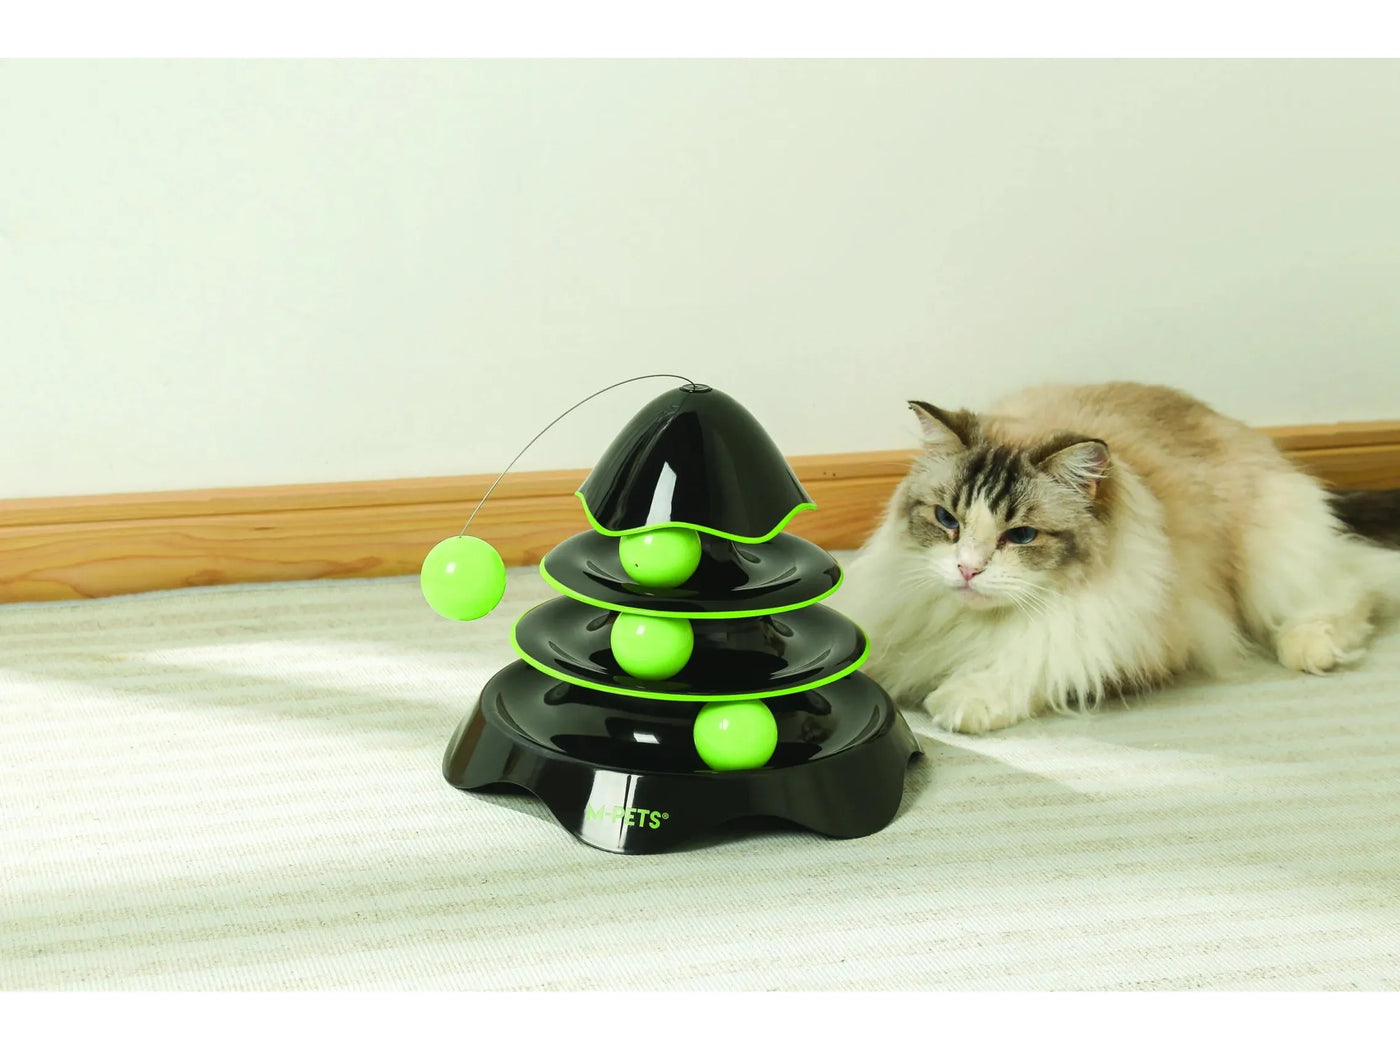 لعبة برج الصواريخ للقطط باللونين الأسود والأخضر